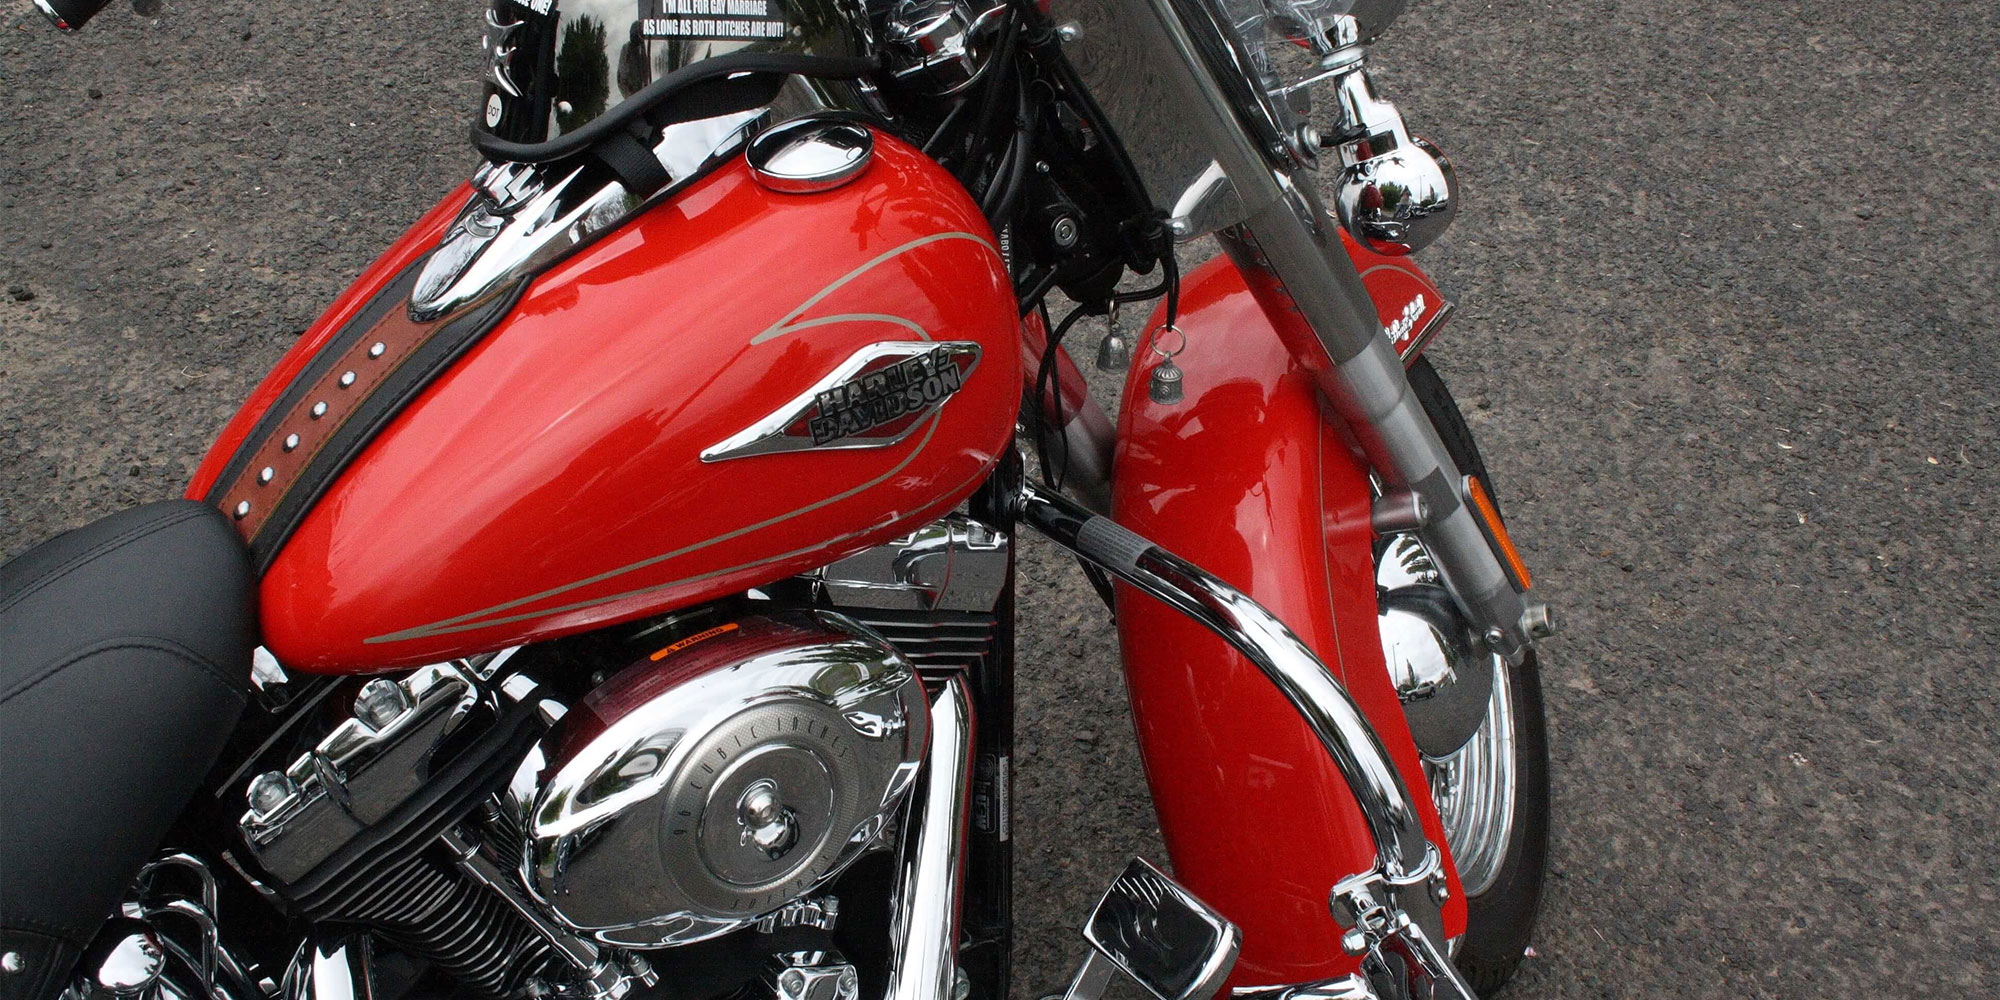 Una motocicleta limpia y brillante que muestra su tanque y guardabarros de color rojo brillante.